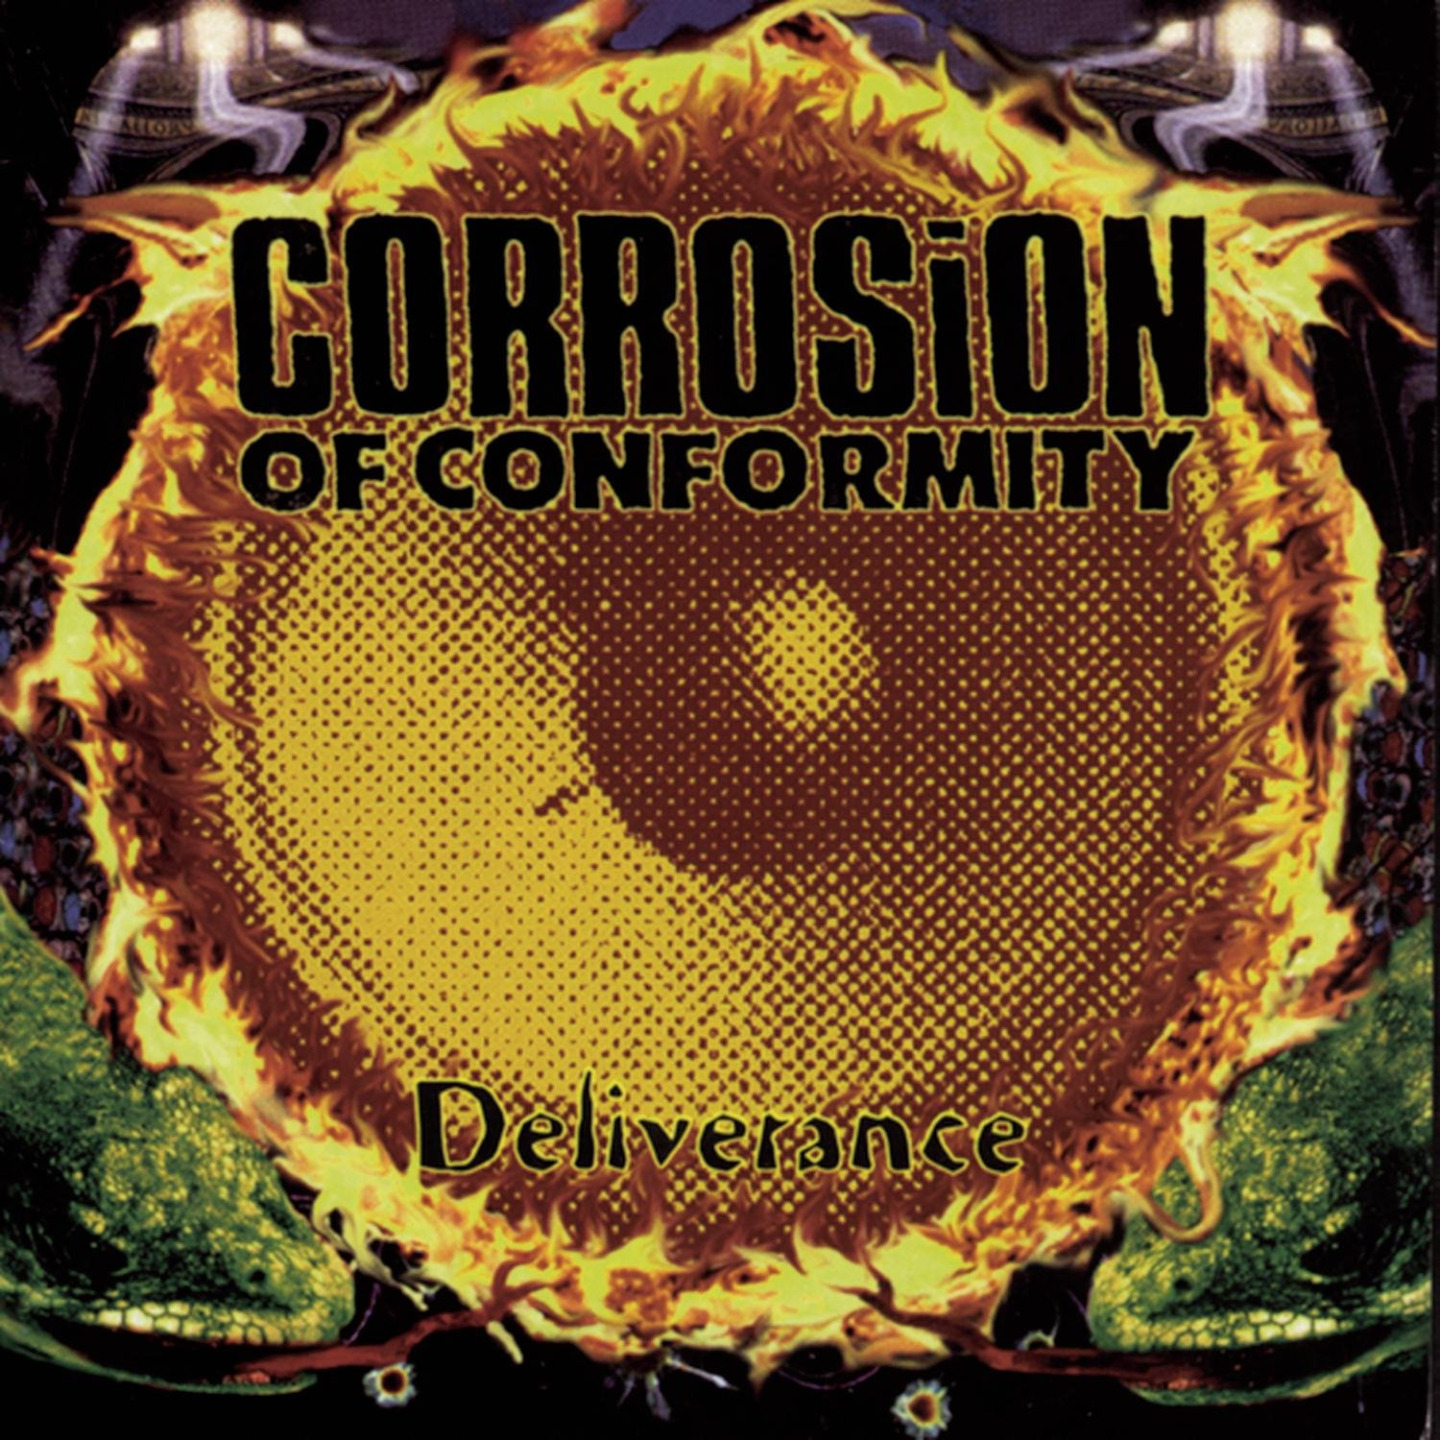 CORROSION OF CONFORMITY - Deliverance 2xLP